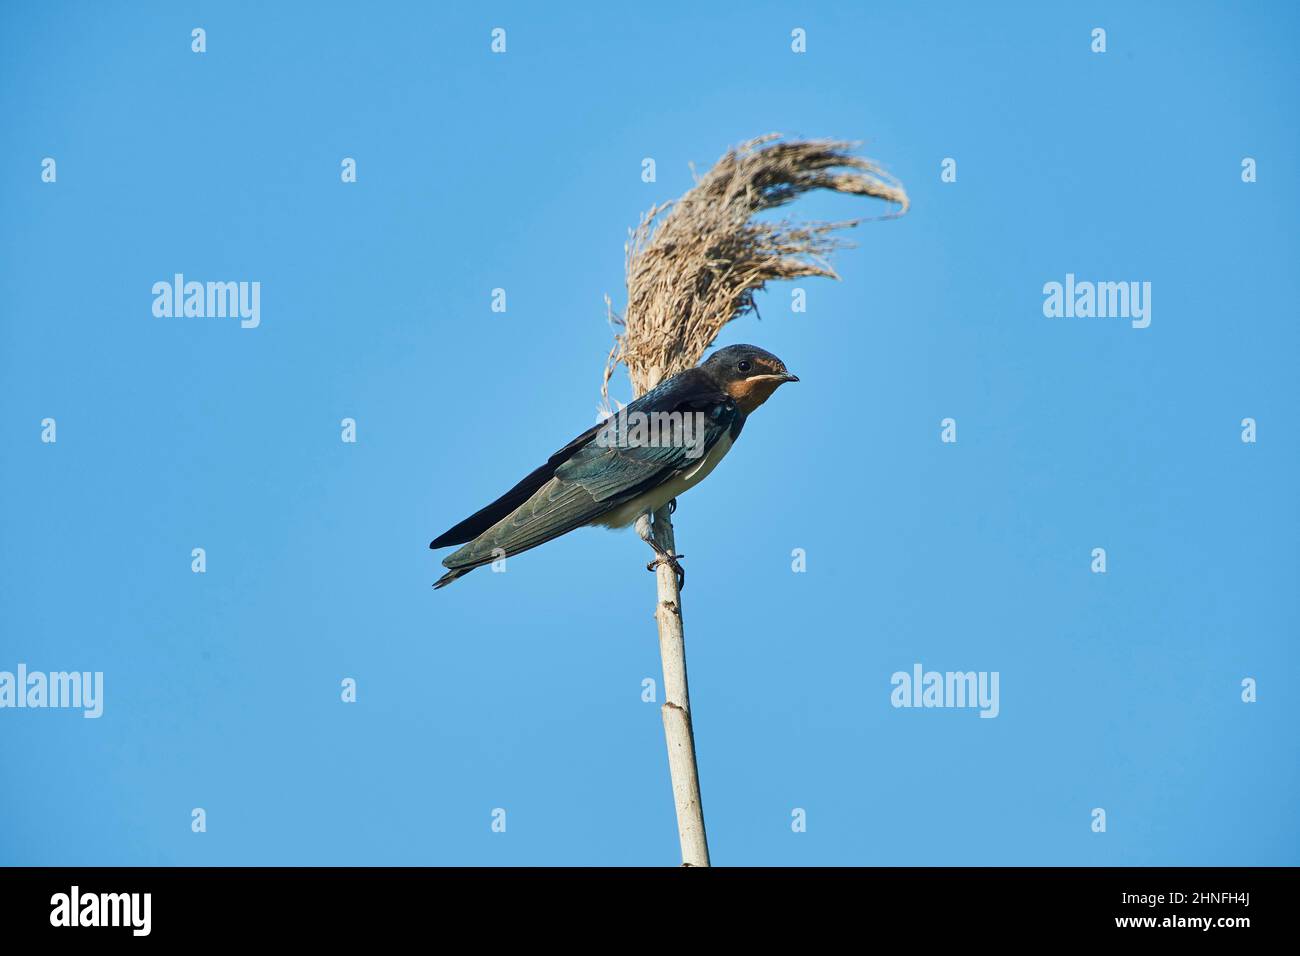 Barn swallow (Hirundo rustica) sitting on a branch, Ebro delta, Catalonia, Spain Stock Photo